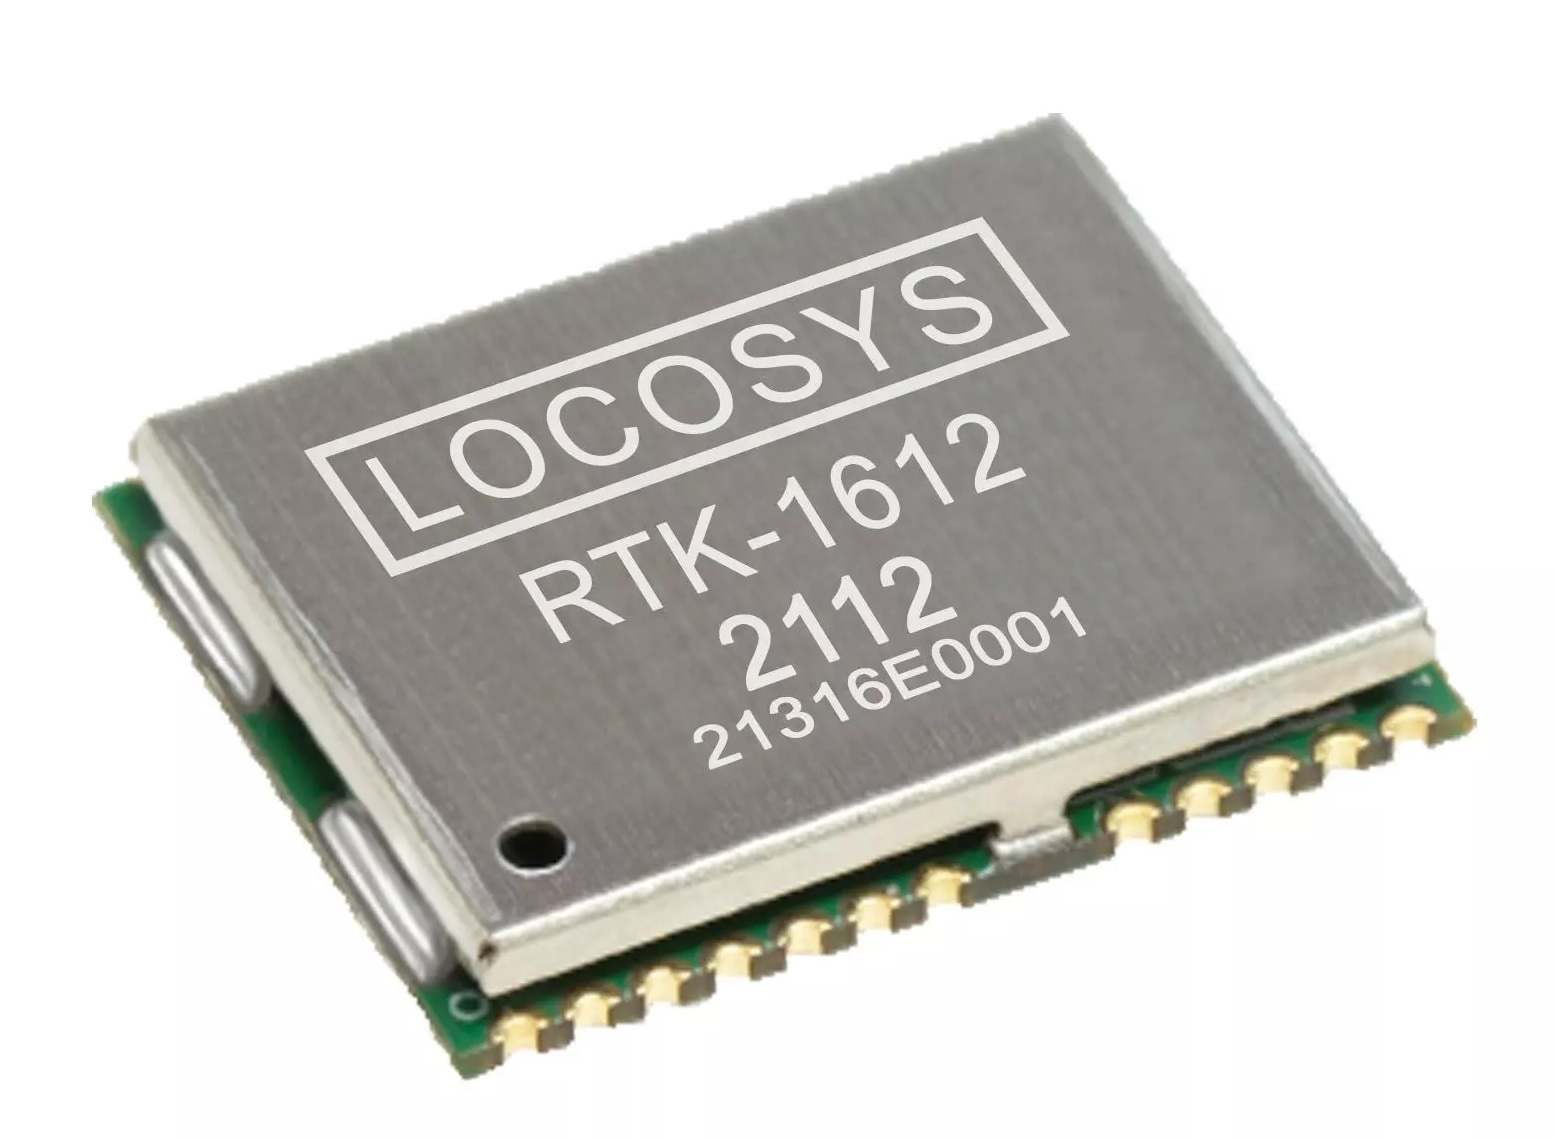 RTK-1612